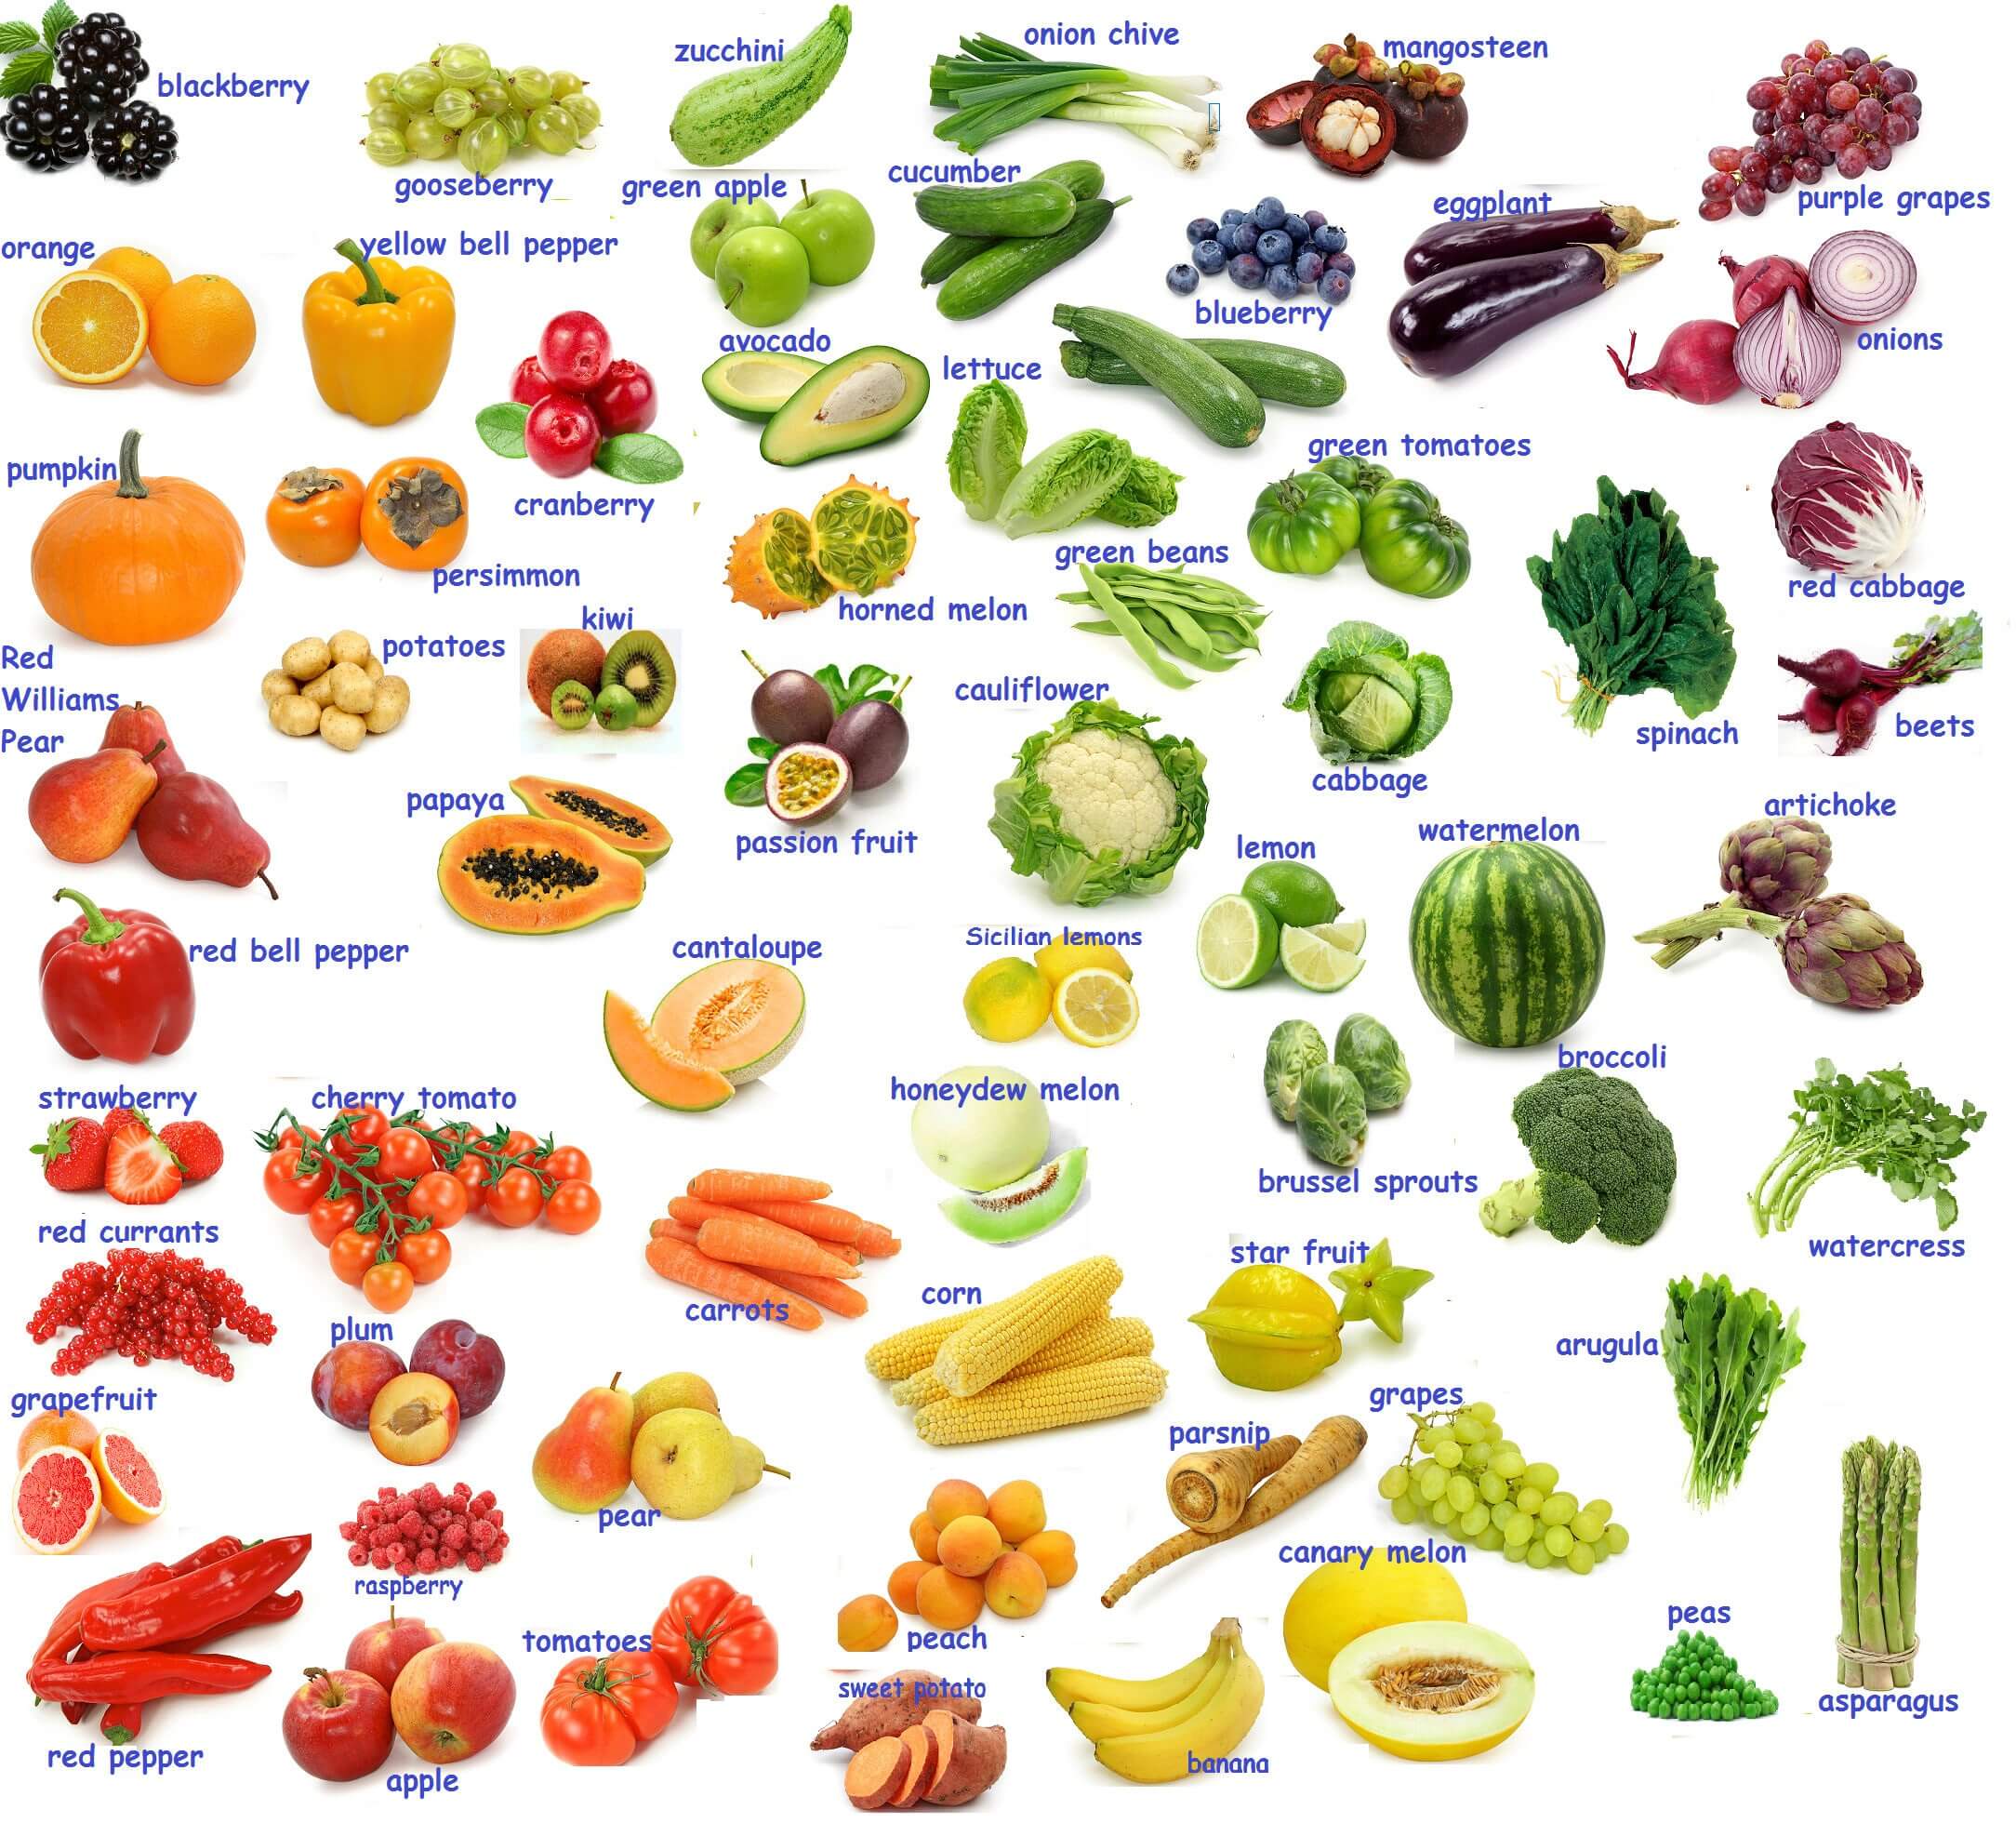 Từ vựng tiếng Anh về chủ đề rau củ rất đa dạng và phong phú